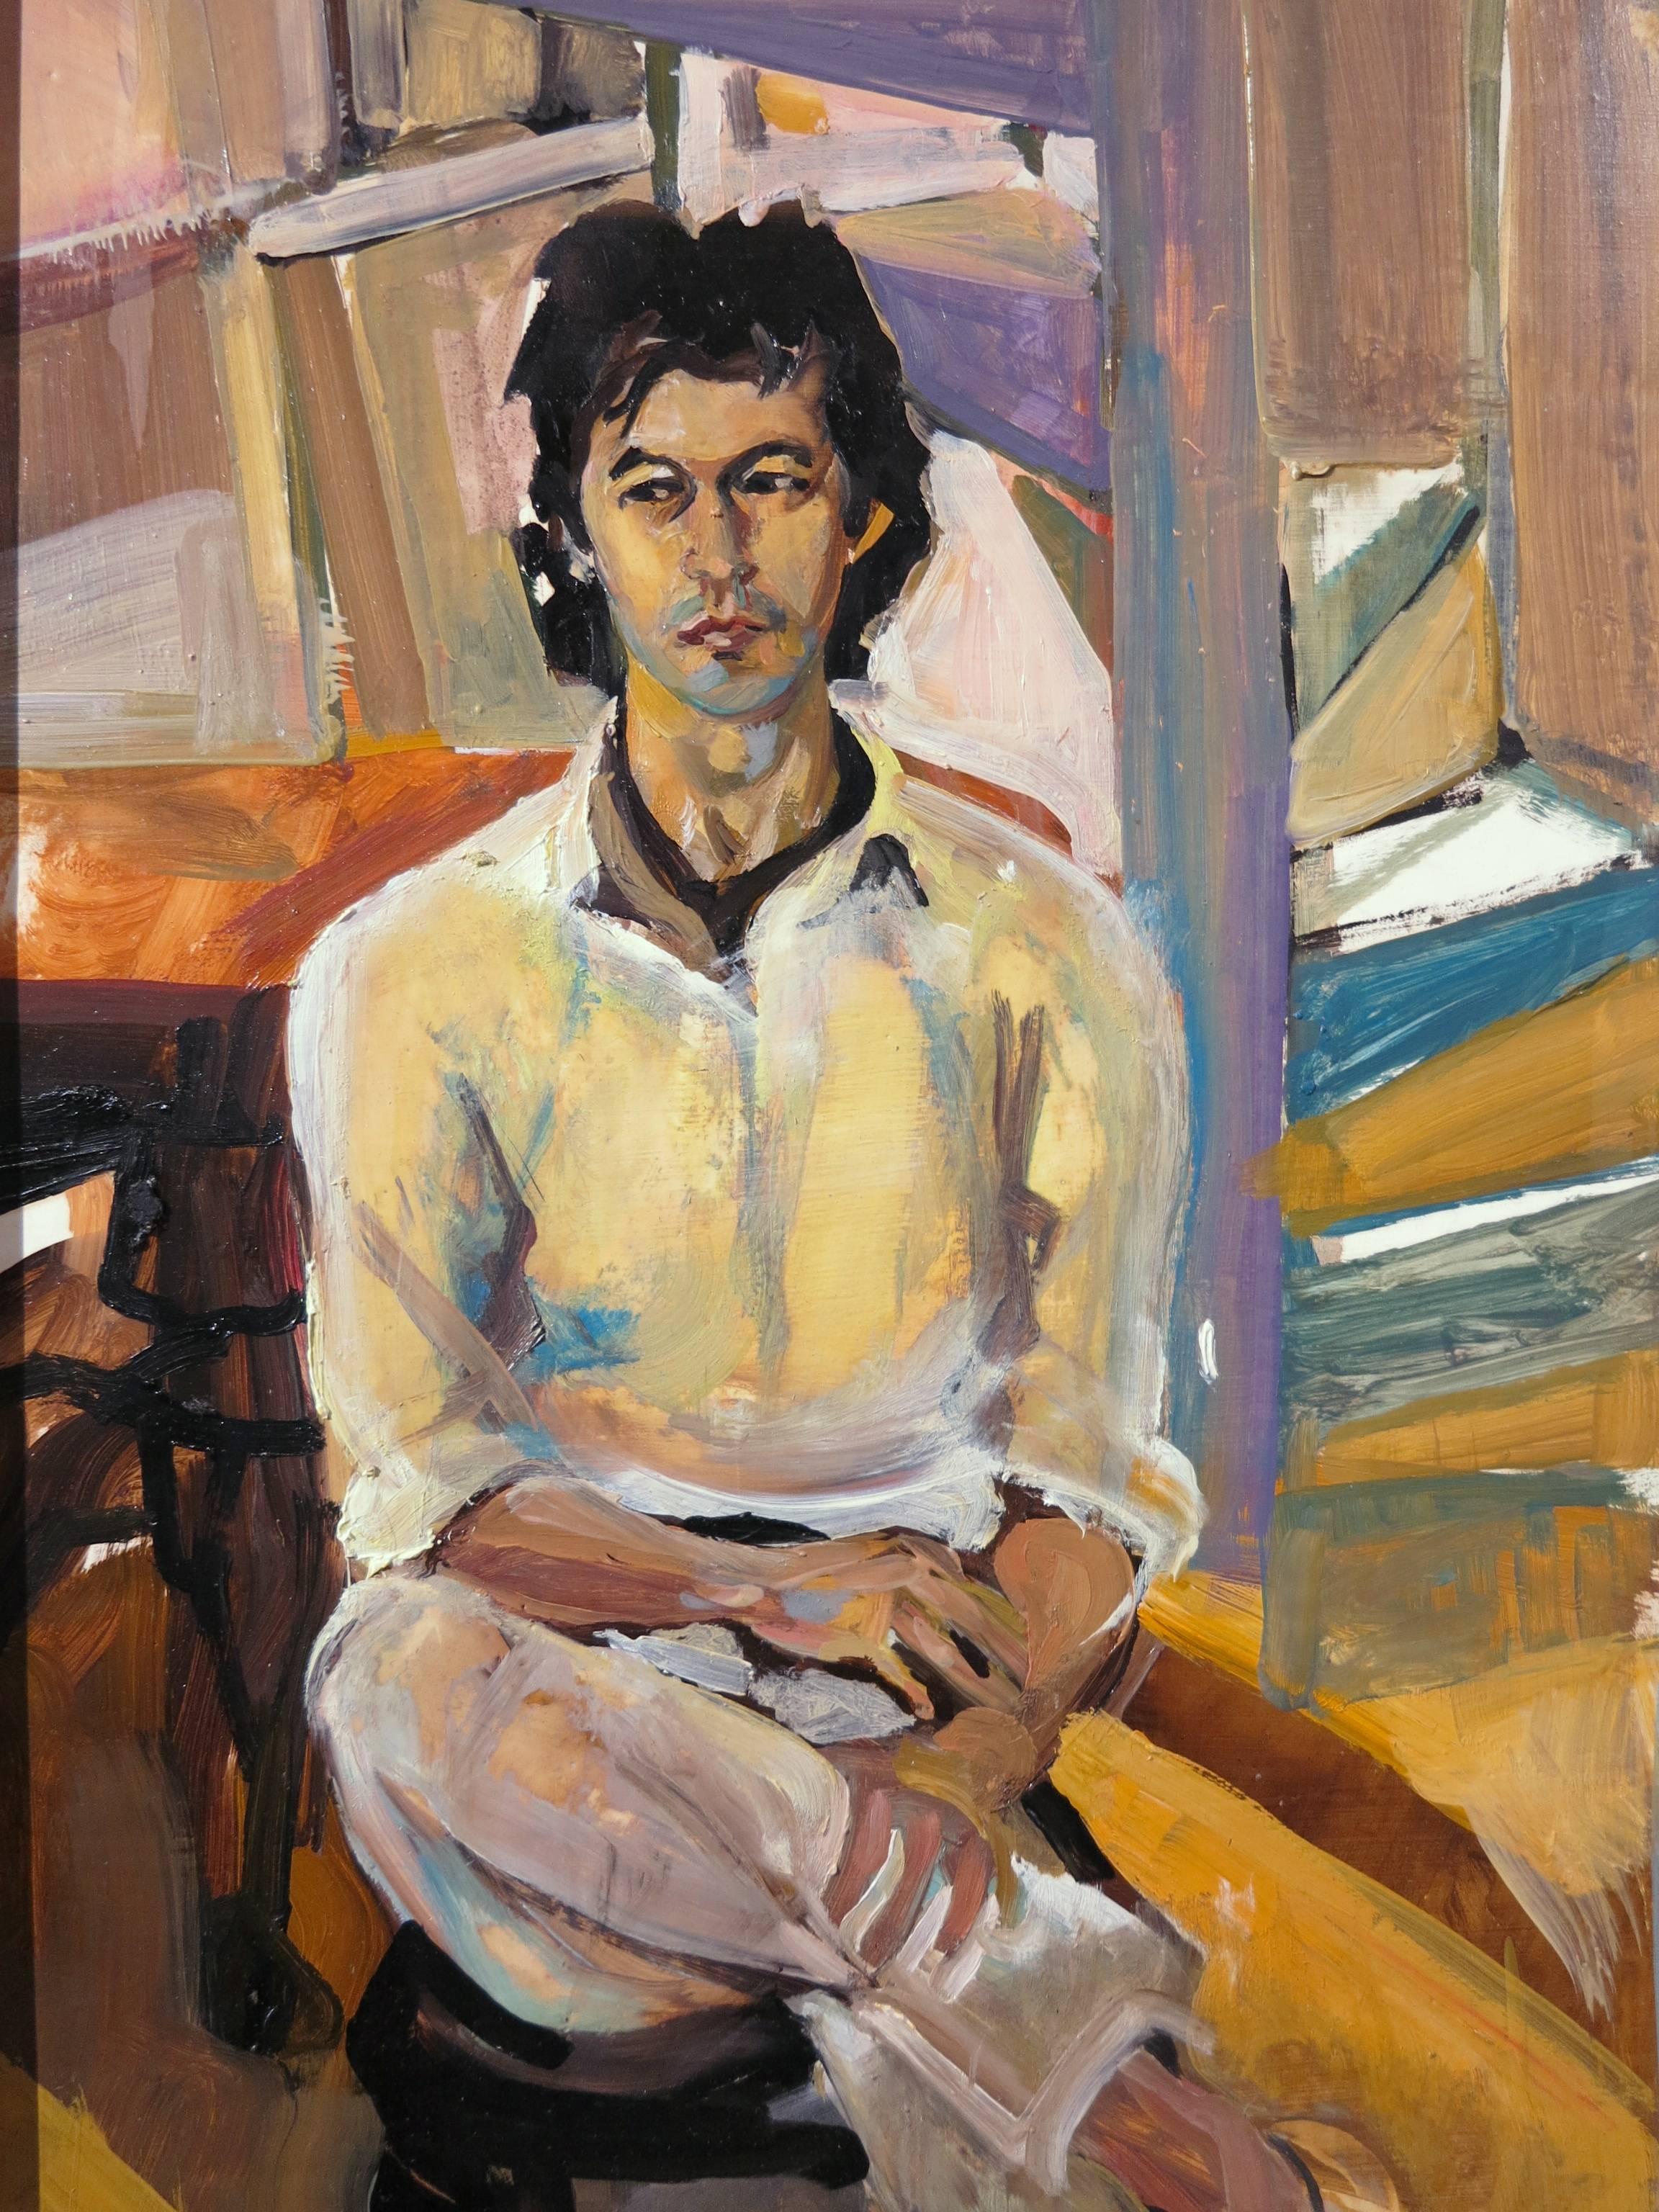 1984 Gemälde der britischen Künstlerin Emma Sergeant (geb. 1959). Porträt von Imran Khan. Öl an Bord misst 12 x 36 Zoll; 13 x 37 Zoll gerahmt. Holzrahmen. Hervorragender Zustand ohne Beschädigungen oder Restaurierung. Unten links mit